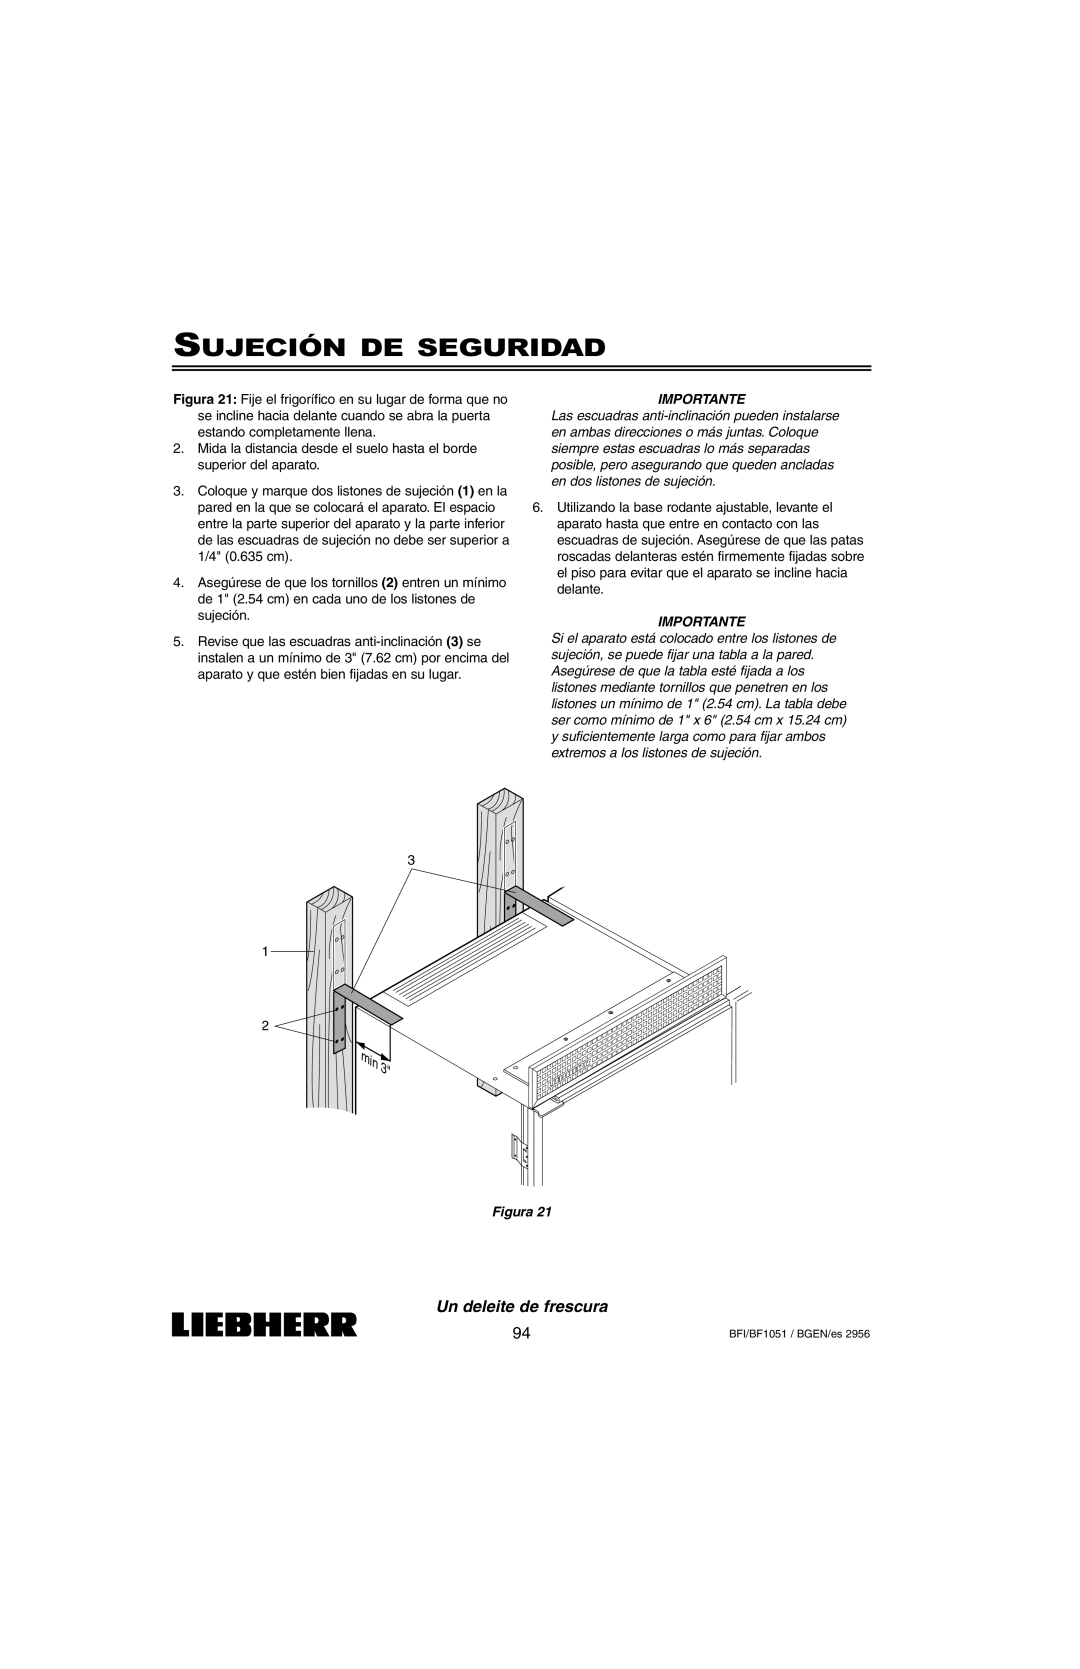 Liebherr BFI1051, BF1051 installation instructions Sujeción De Seguridad, Un deleite de frescura, Importante, Figura 